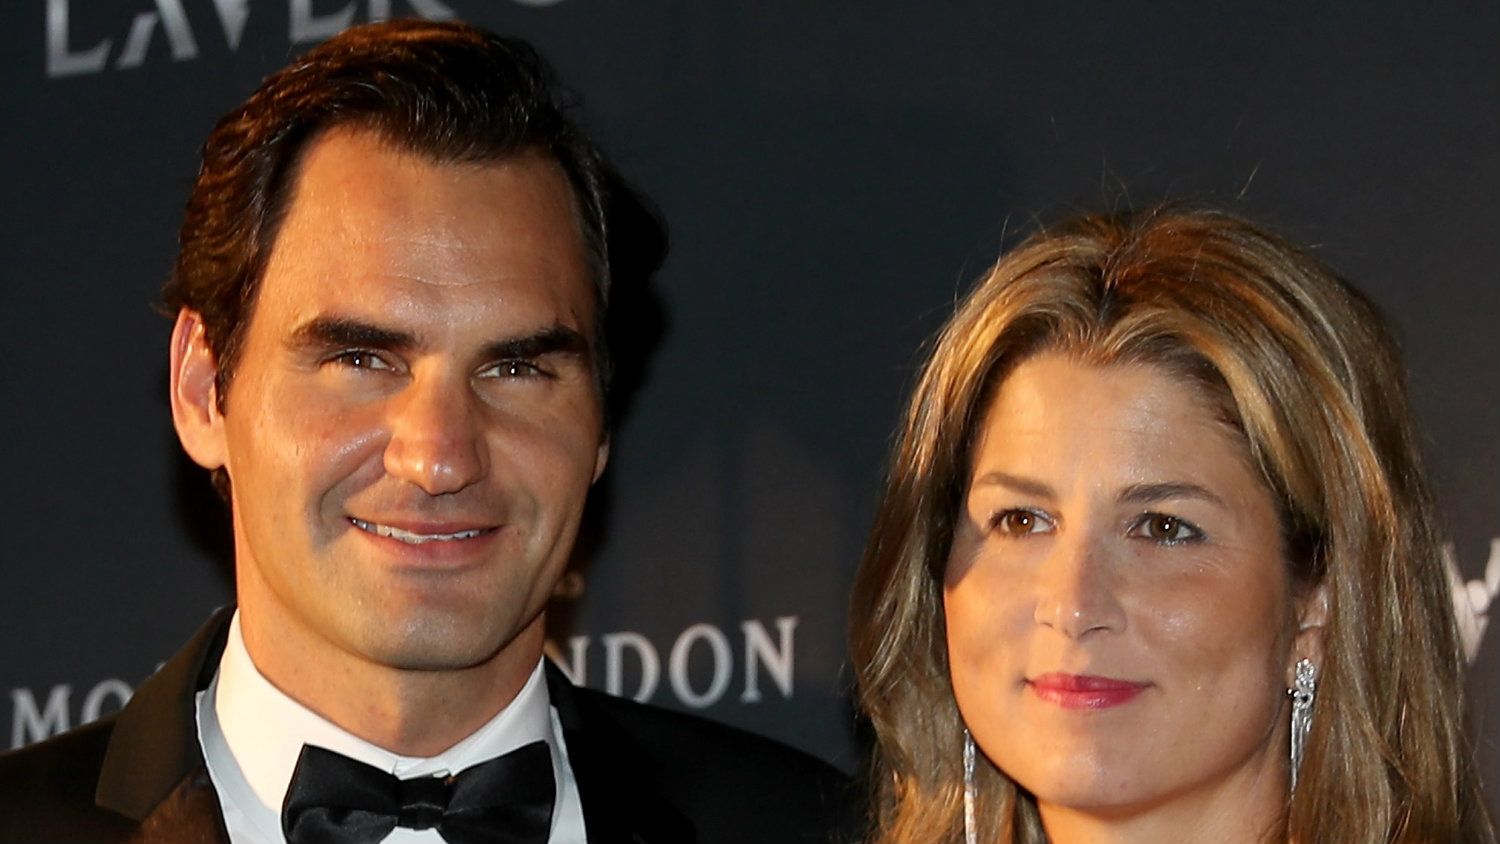 Federer a családját választotta a tenisz helyett